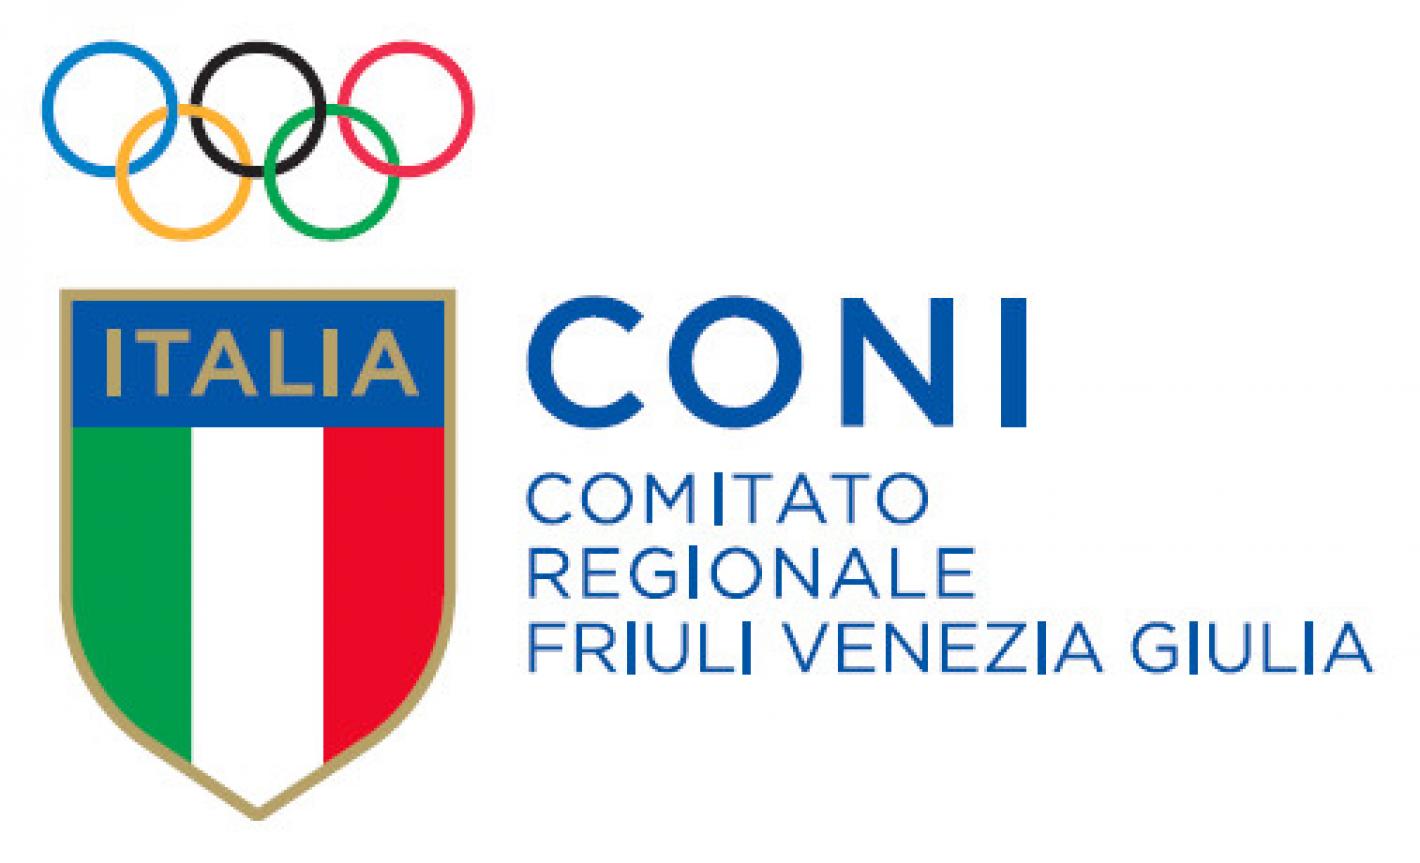 images/friuli_venezia_giulia/2019/medium/logo-coni.jpg